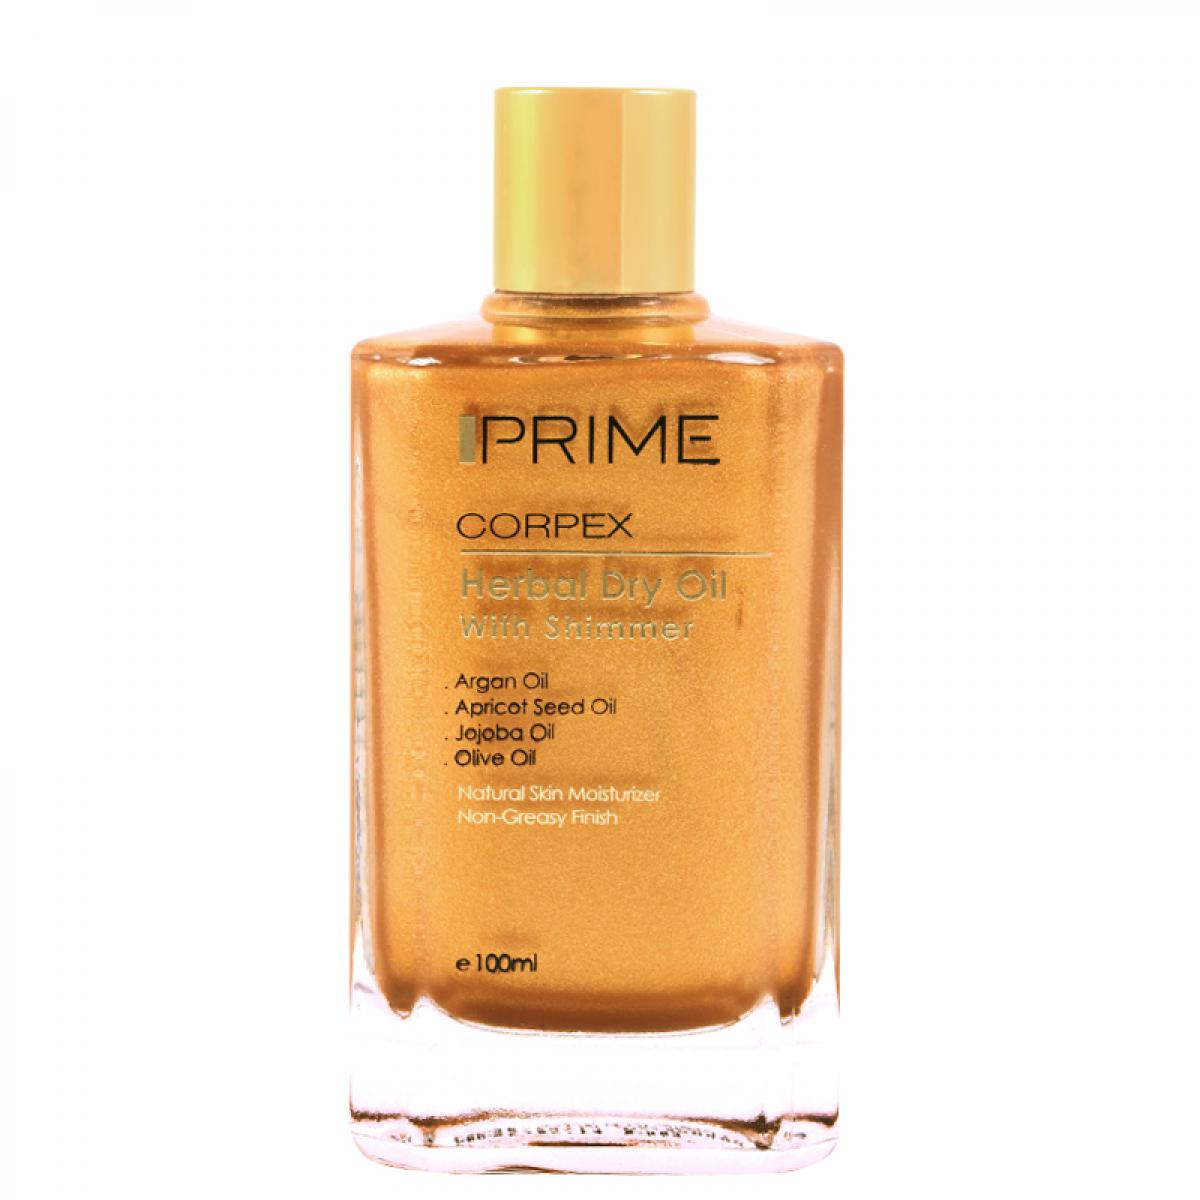 روغن گیاهی اکلیلی صورت و بدن و مو - Prime Corpex Face & Body & Hair Herbal Oil 100ml